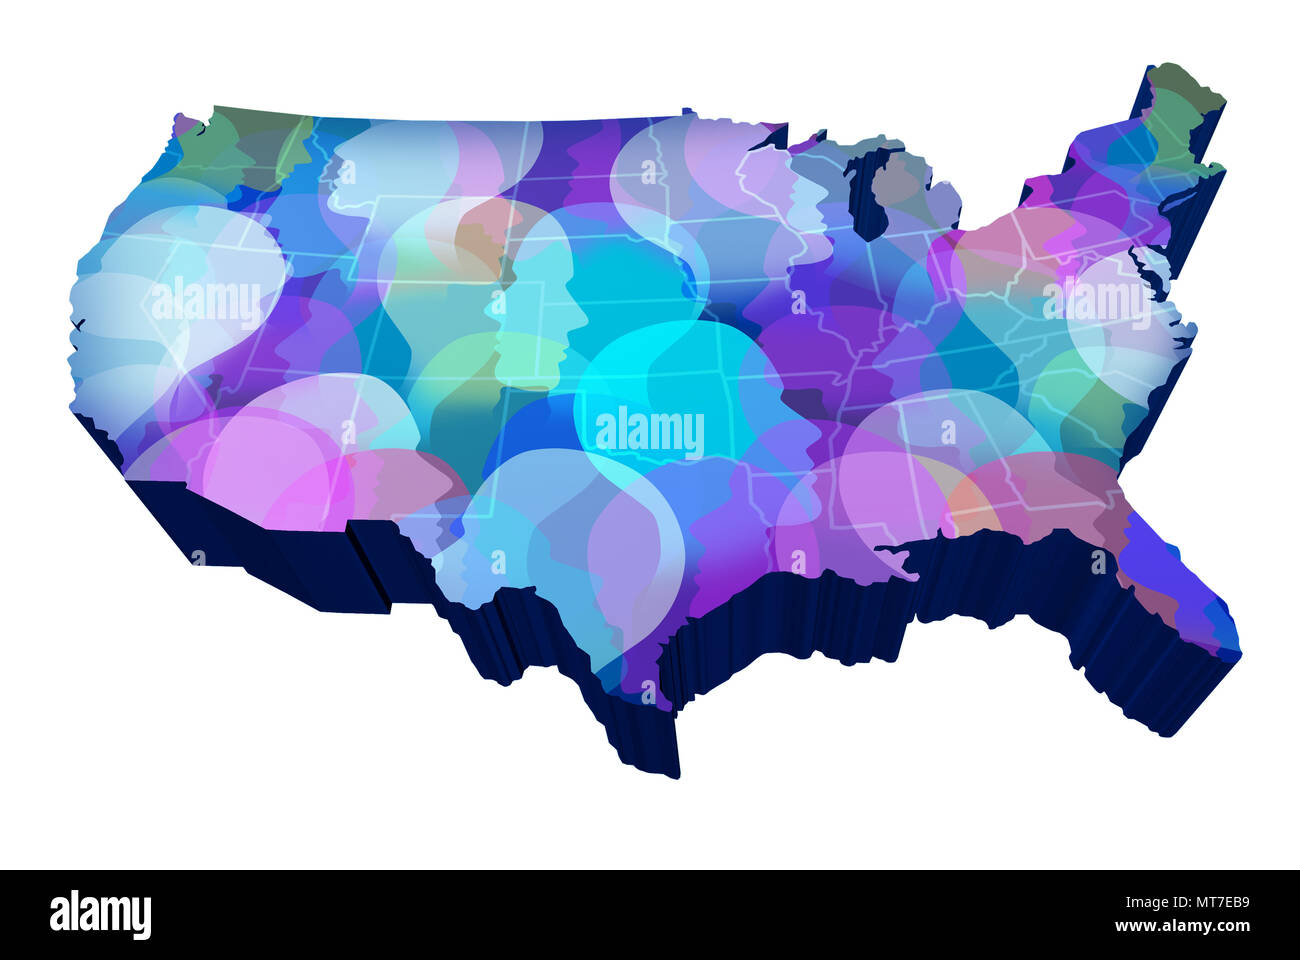 United States social media und amerikanischen Öffentlichkeit Vernetzung der Daten wie die USA mit einer Menge von Menschen als 3D-Abbildung auf weißen isoliert. Stockfoto